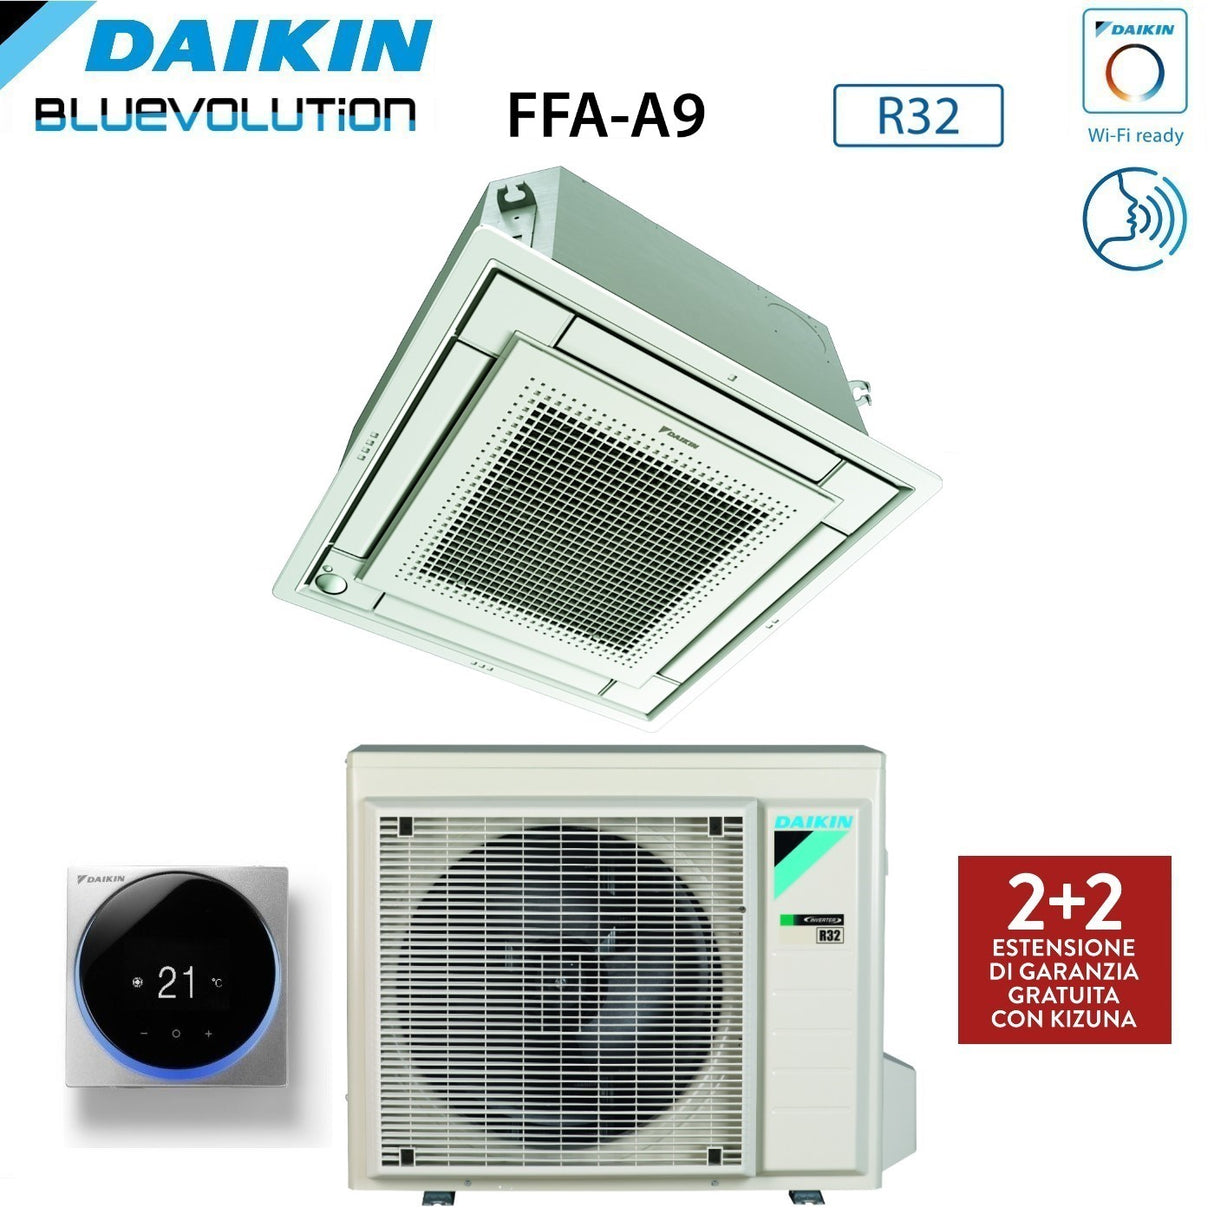 immagine-15-daikin-climatizzatore-condizionatore-daikin-a-cassetta-fully-flat-9000-btu-ffa25a9-r-32-wi-fi-optional-con-griglia-inclusa-classe-aa-garanzia-italiana